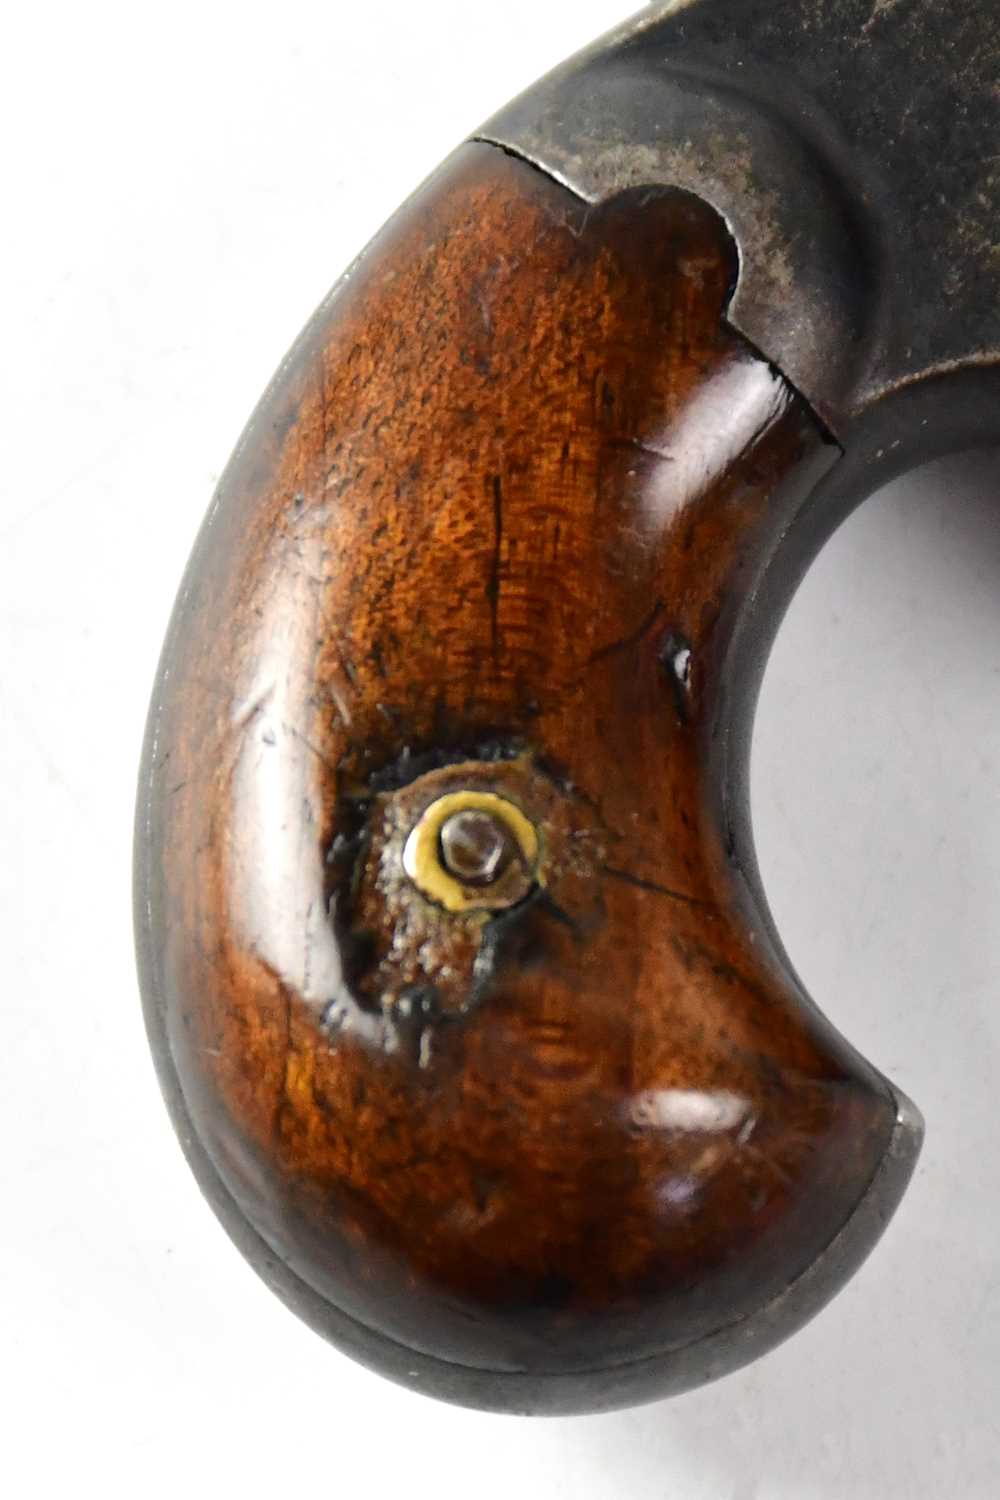 ETHAN ALLEN & CO; a .41" rimfire Derringer pocket pistol with 2 1/2" part octagonal barrel stamped - Image 6 of 6